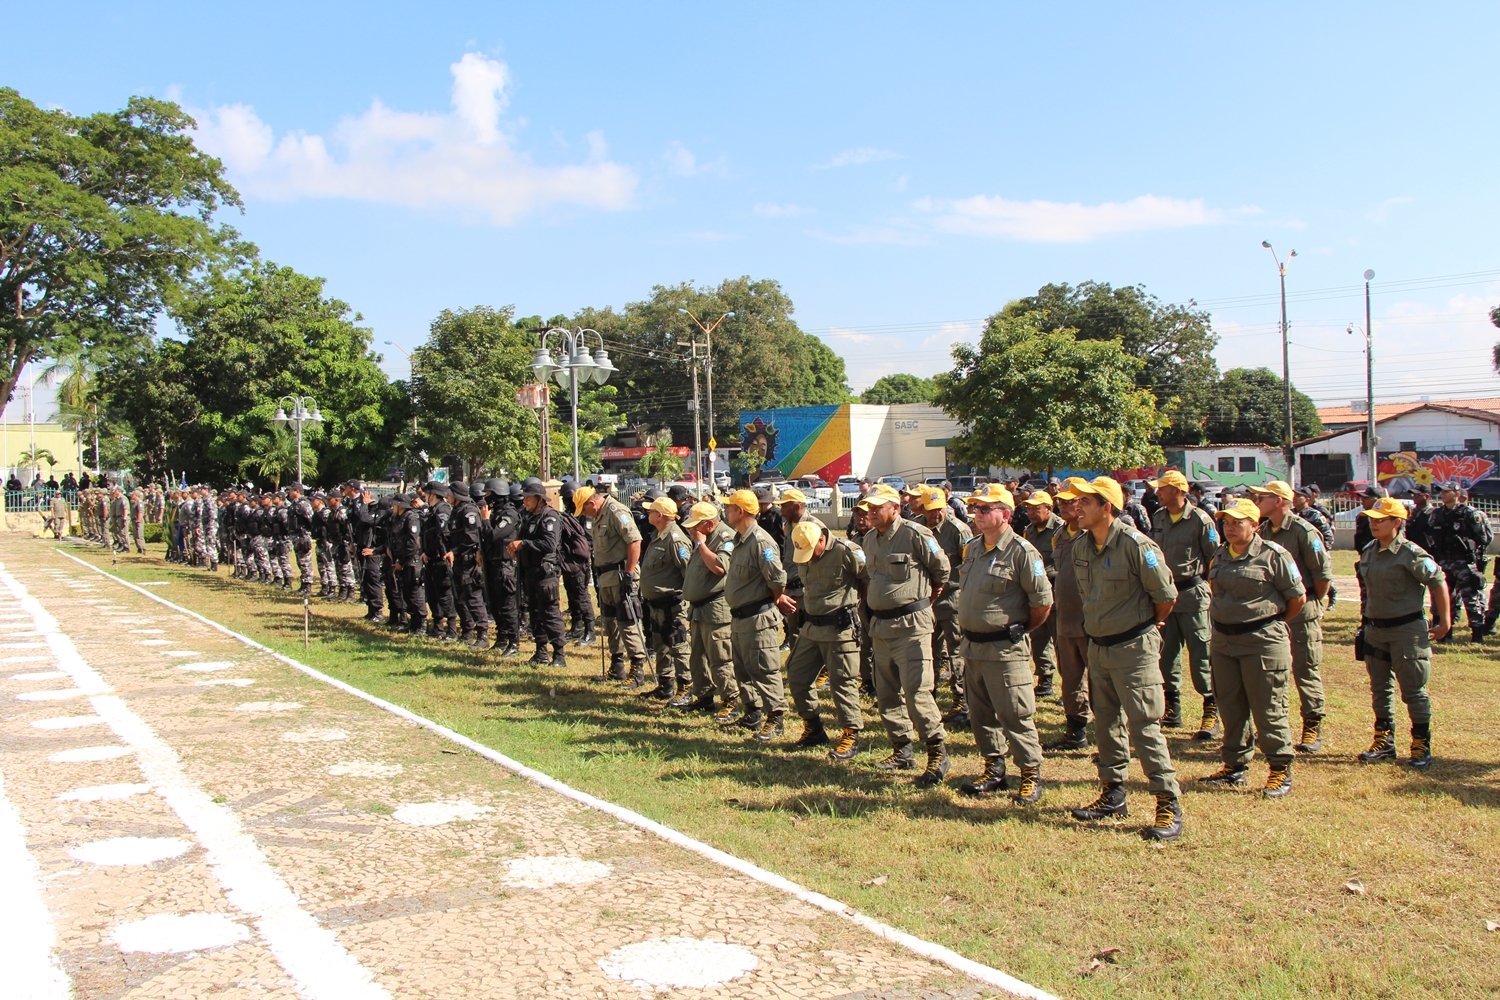 Solenidade de comemoração aos 184 anos da Polícia Militar do Piauí